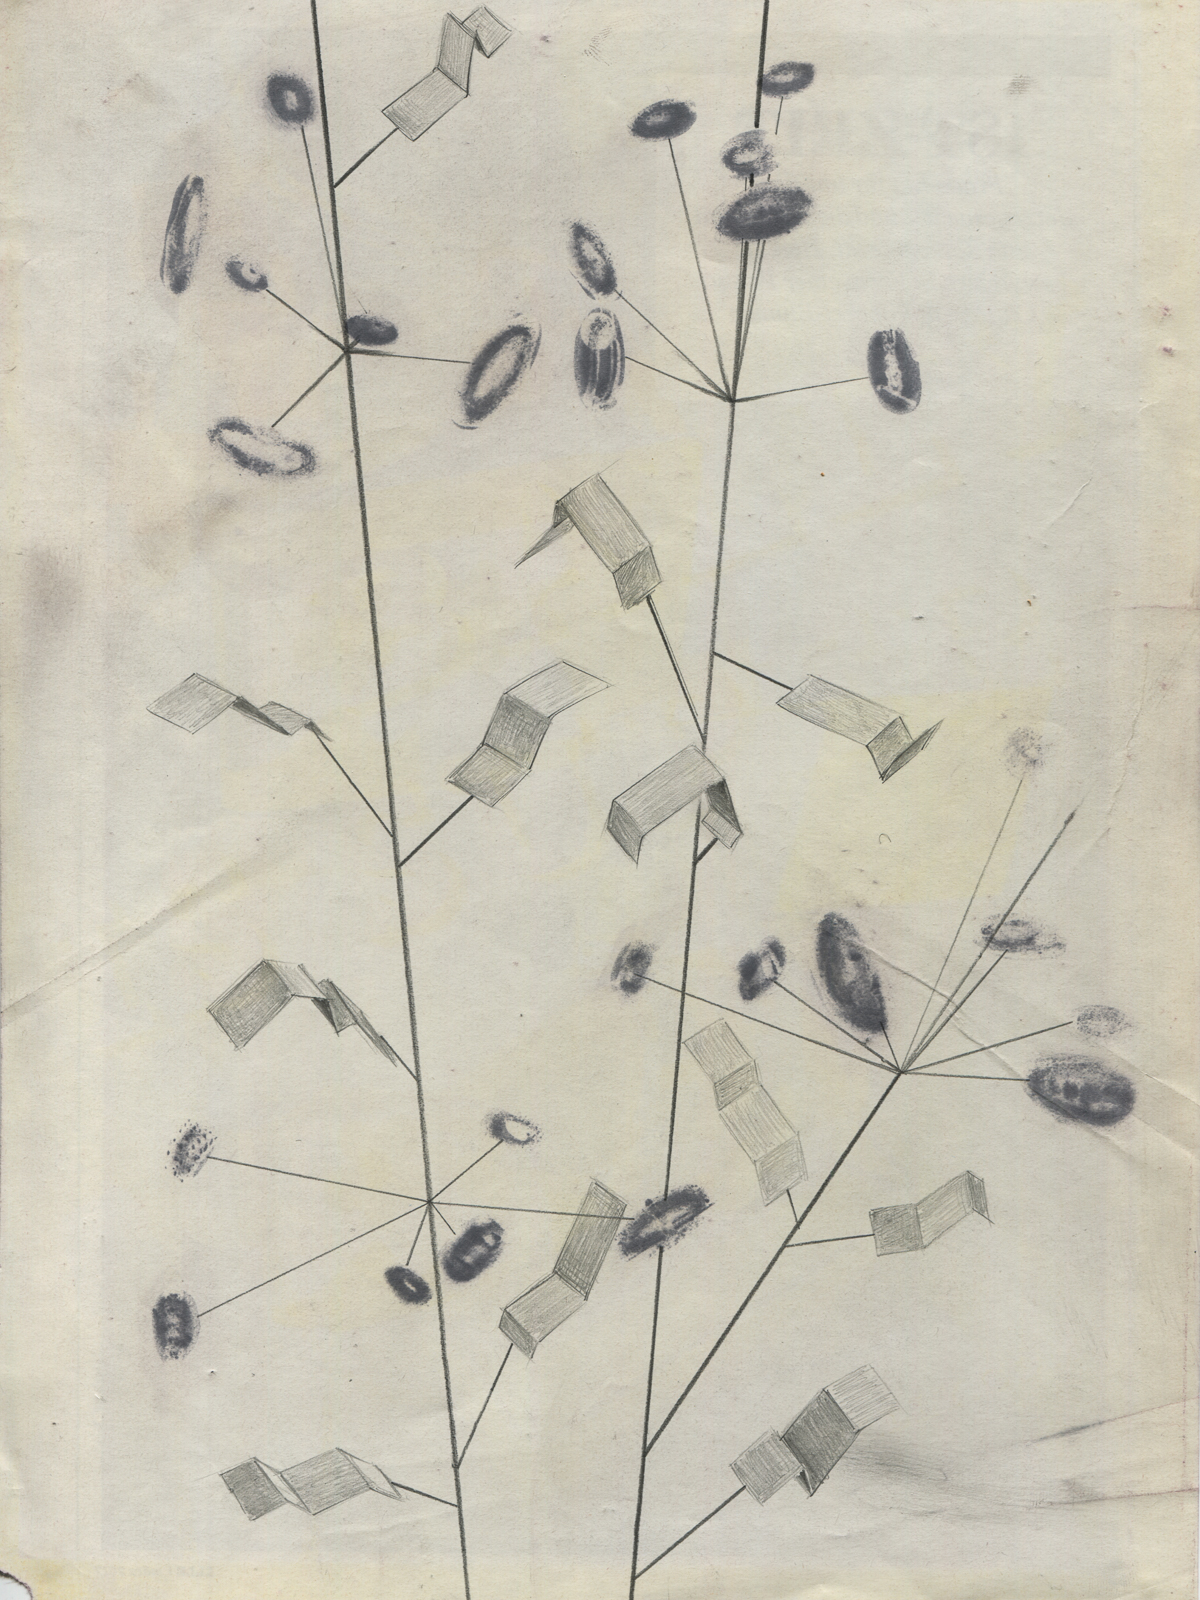 Taxonomy #02, 2017, 19.7 x 27.4 cm, lavenderoil, pencil, feltpen on magazine page